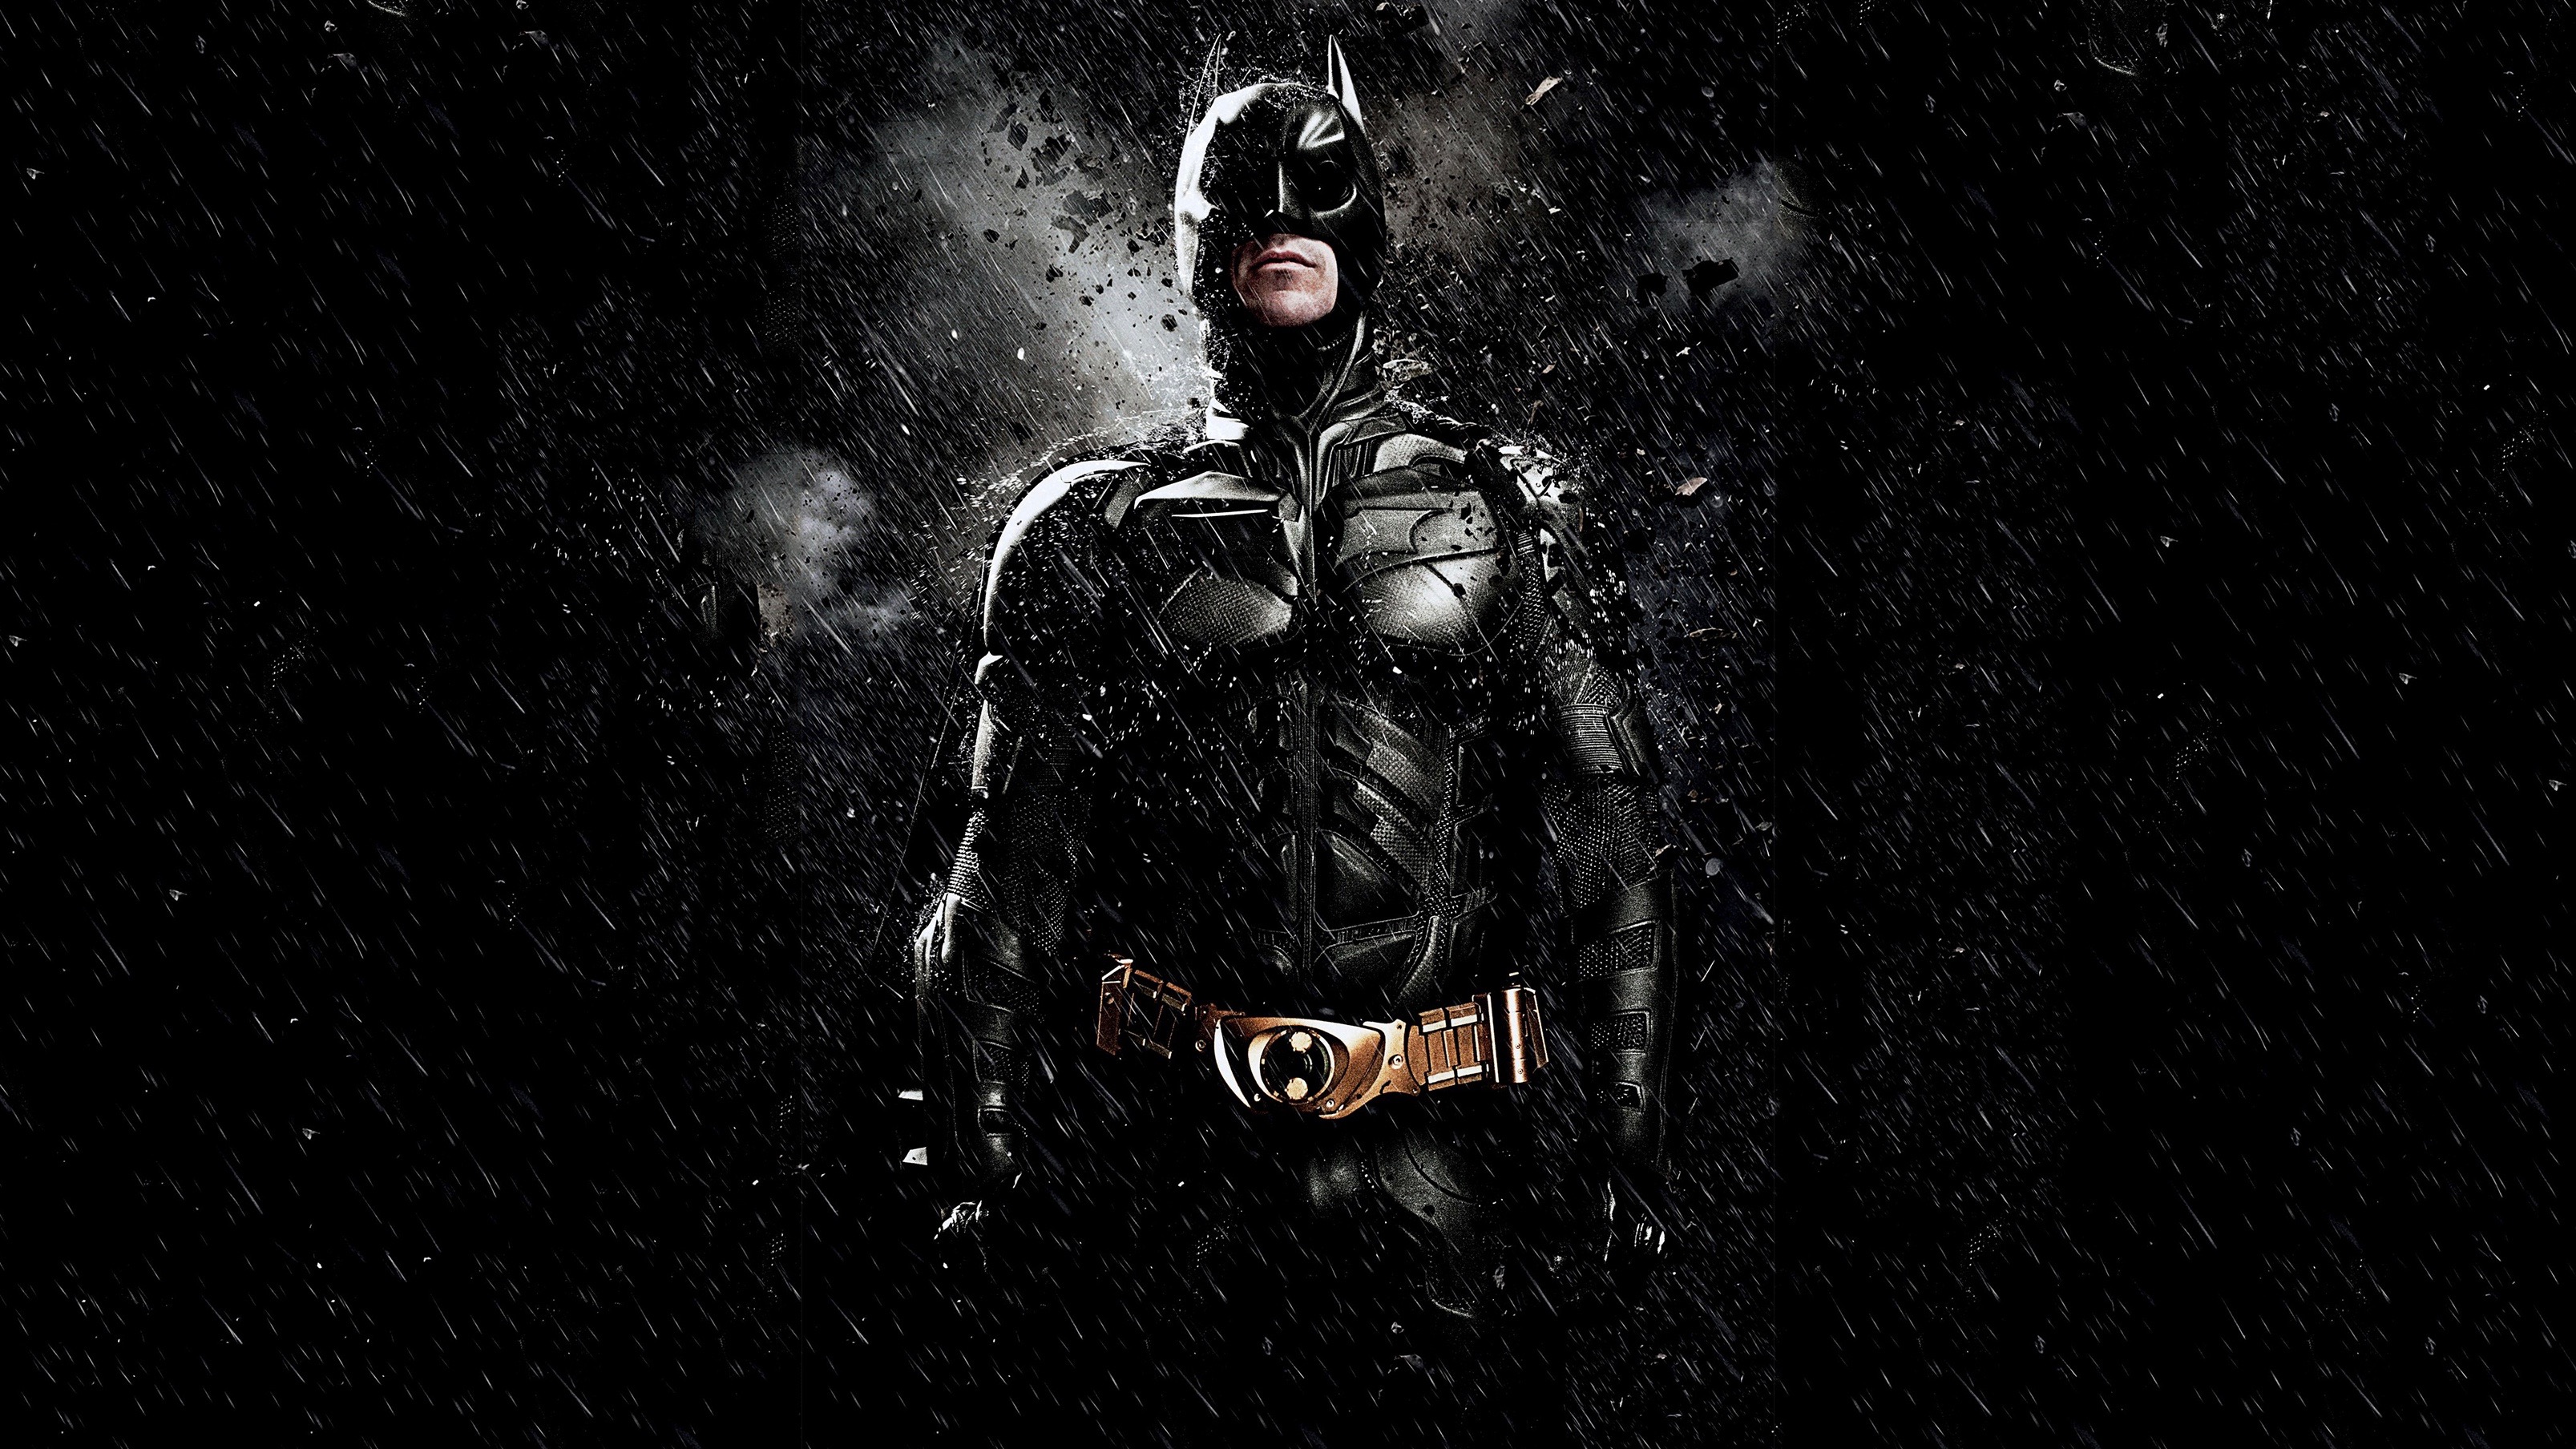 The Dark Knight Rises HD Wallpaper